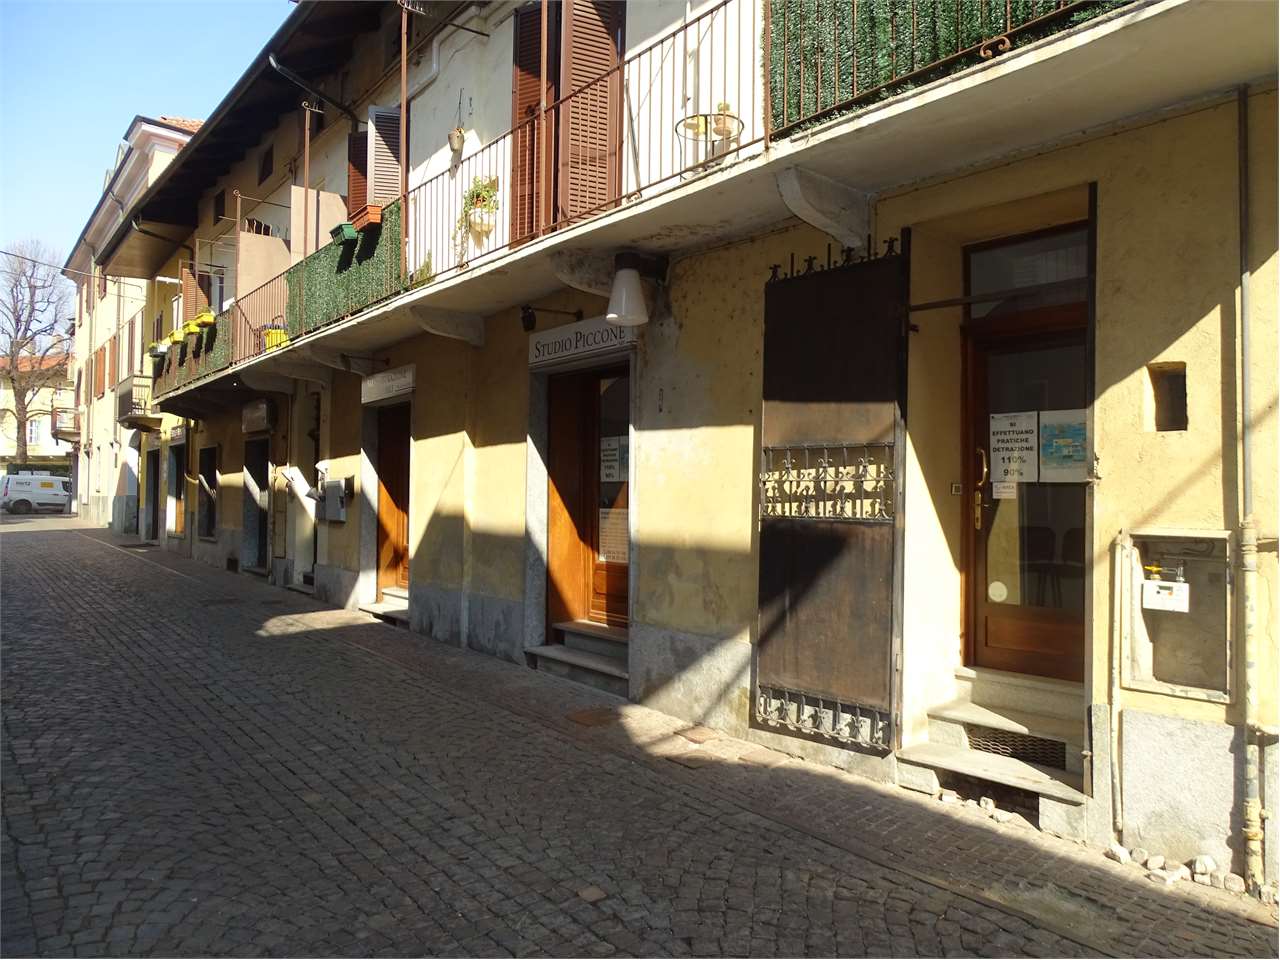 Negozio / Locale in affitto a Ciriè, 3 locali, prezzo € 380 | CambioCasa.it